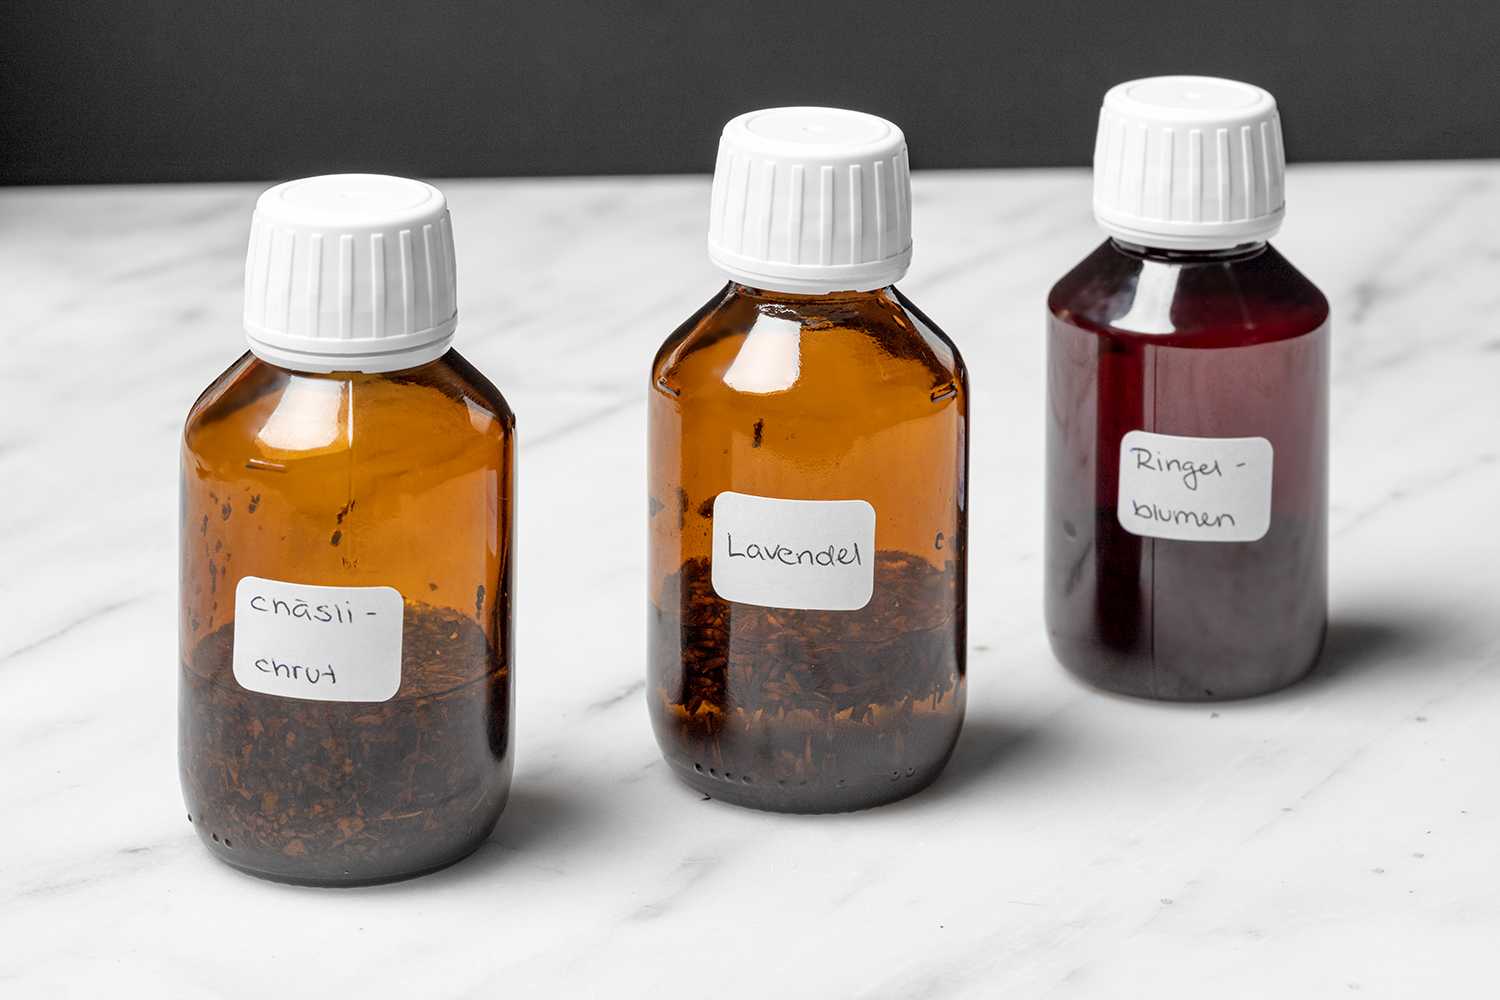 Drei kleine braune Flaschen mit weissem Verschluss, angeschrieben mit "Chäslichrut", "Lavendel" und "Ringelblume", darin befinden sich die entsprechenden Pflanzen mit Öl